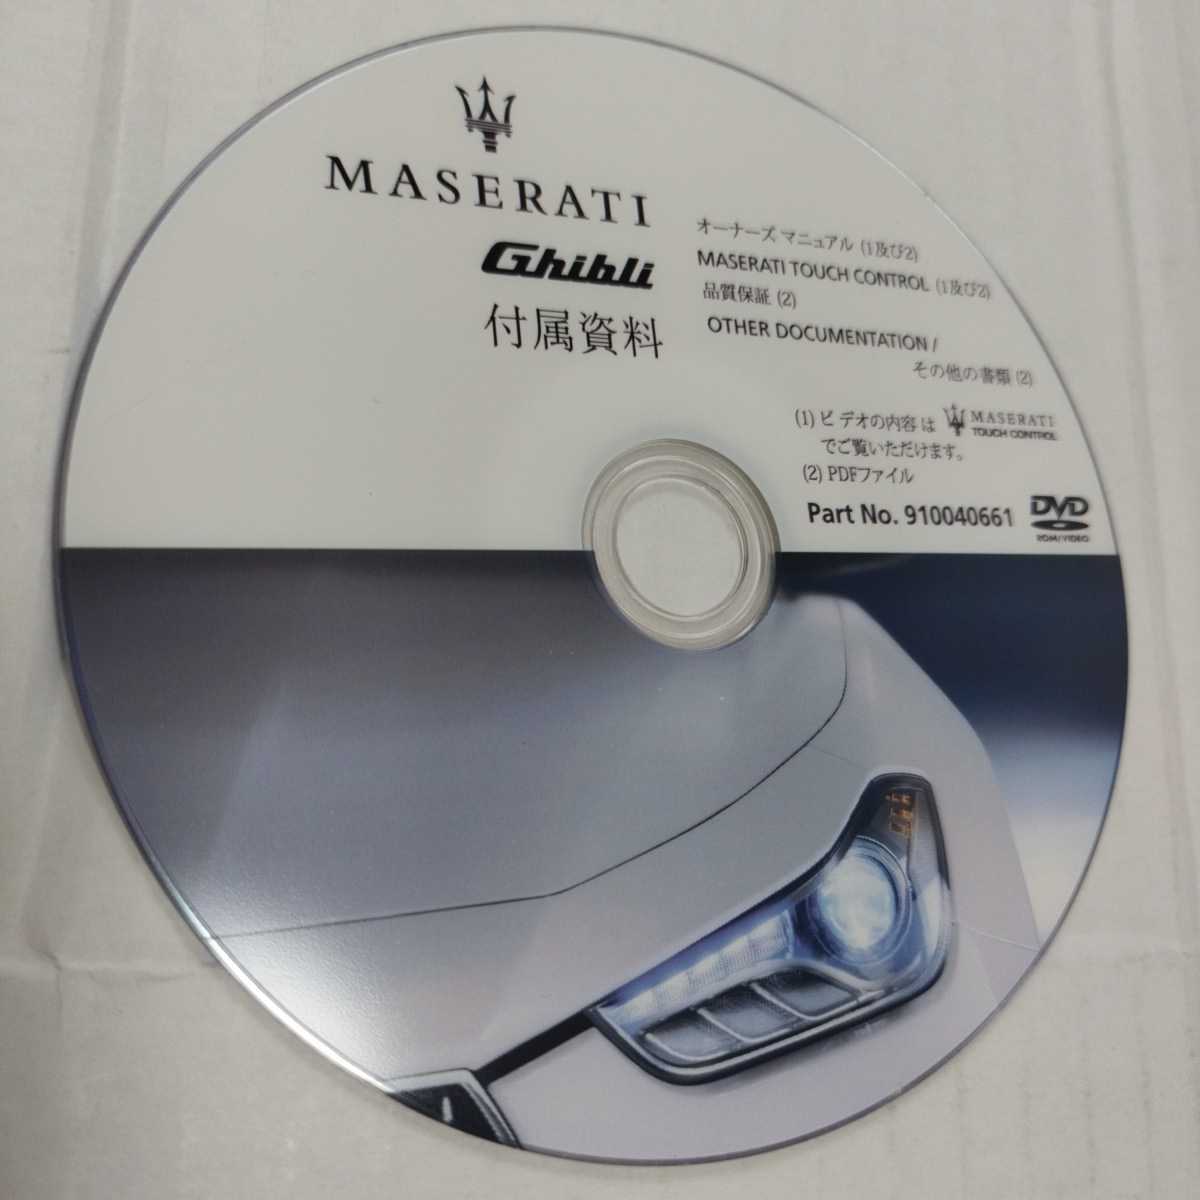  Maserati Ghibli инструкция по эксплуатации инструкция для владельца DVD No.910040661 б/у товар 